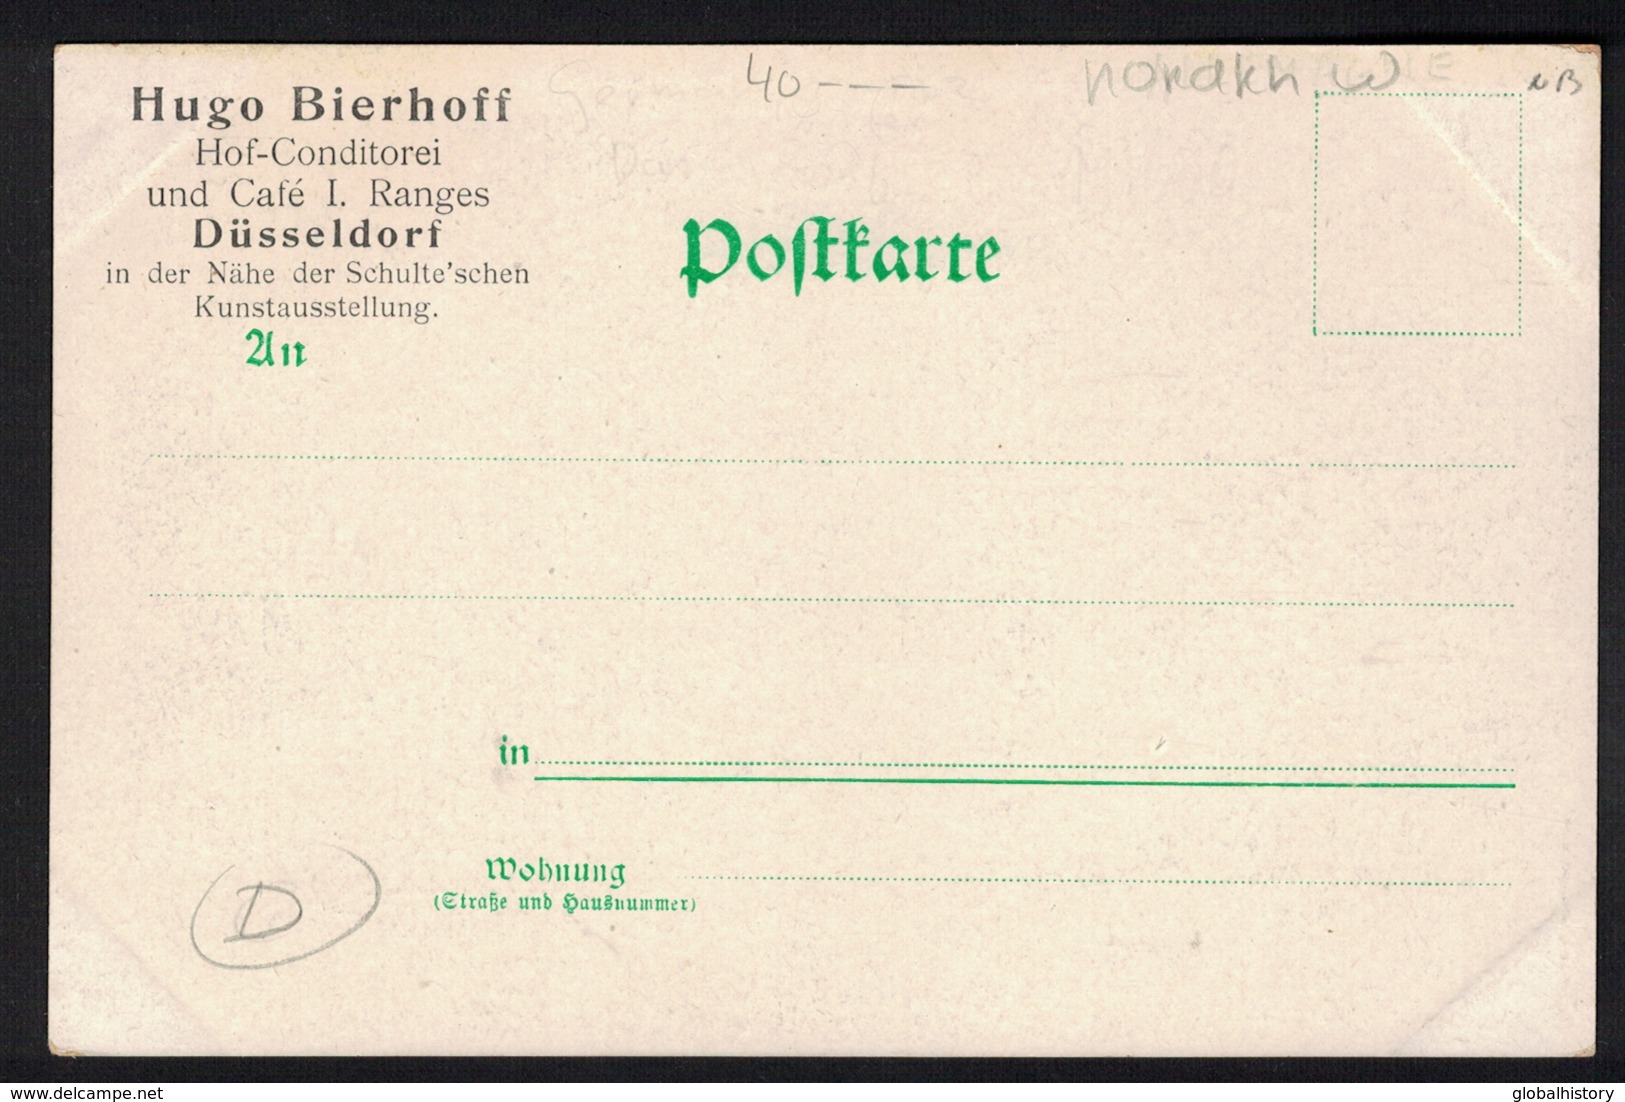 DF2370 - Expo DÜSSELDORF 1902 - HOF CONDITOREI UND CAFE I. RANGES - HUGO BIERHOF - Duesseldorf